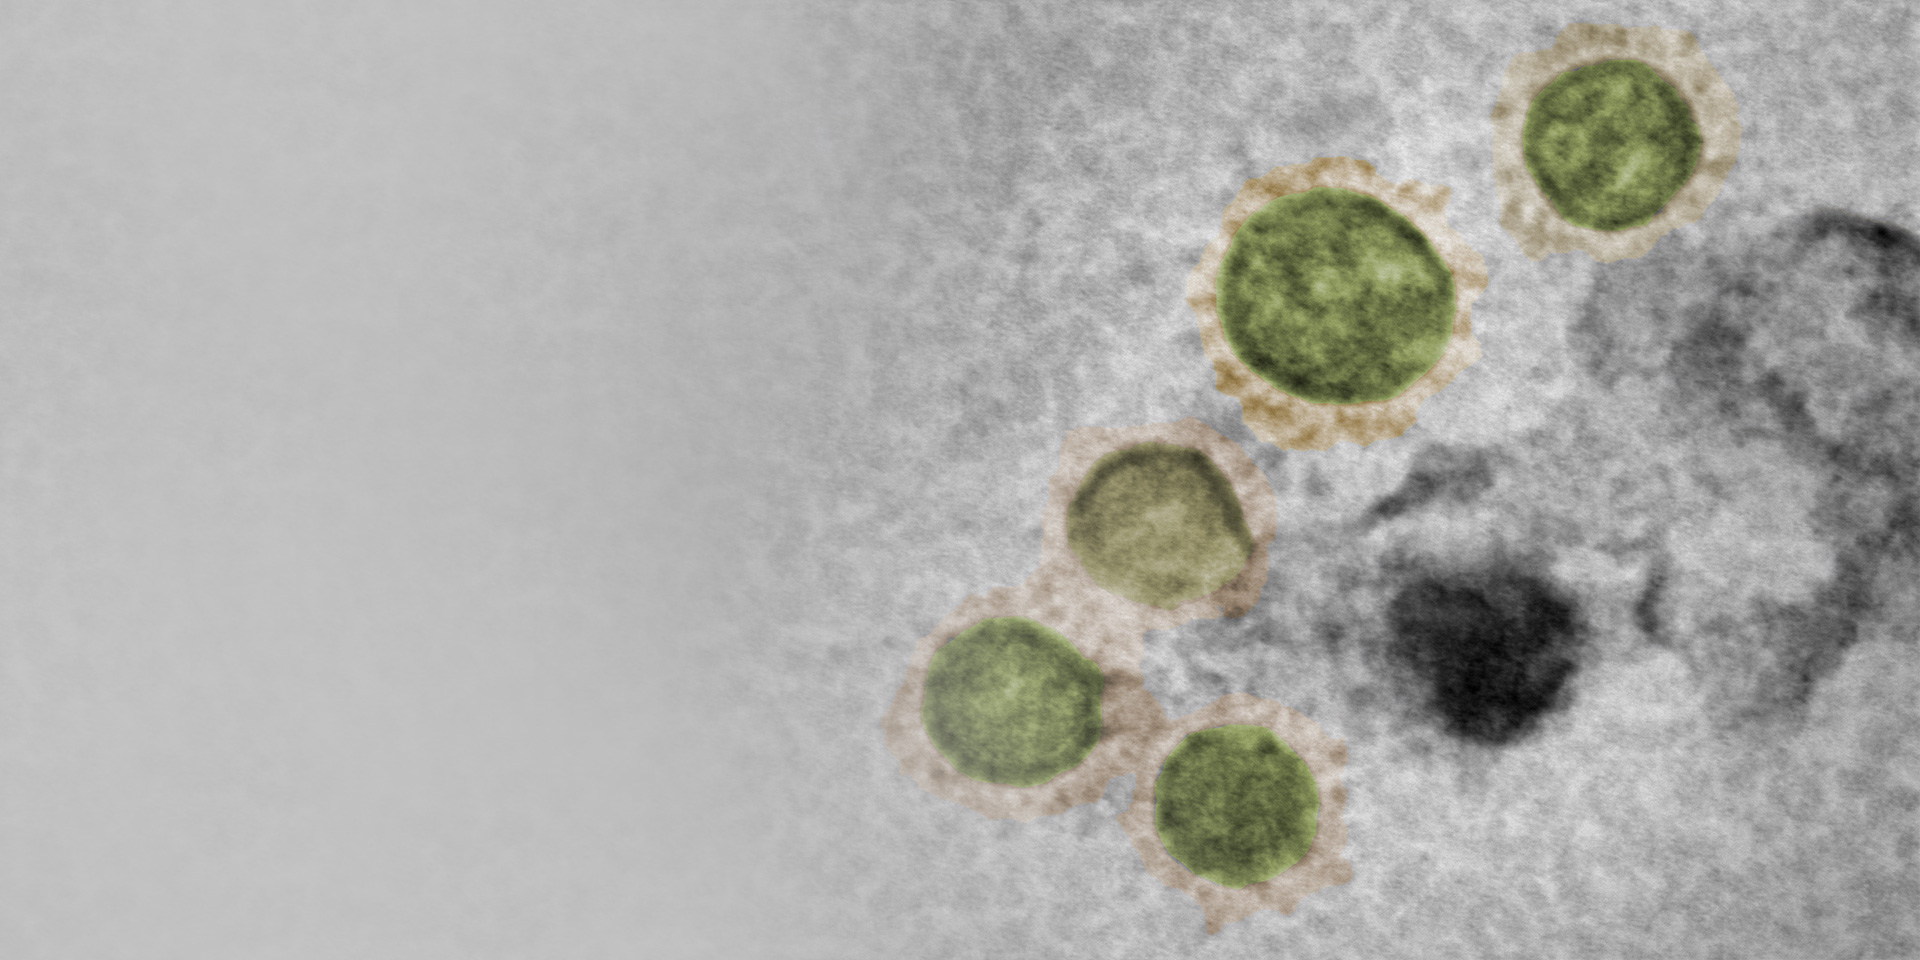 Virus SARS-CoV-2, cultivo, inactivado, tinción negativa, GeminiSEM 560, aSTEM, HAADF/BF. Muestra: cortesía de M. Hannah, Salud Pública de Inglaterra, Reino Unido.